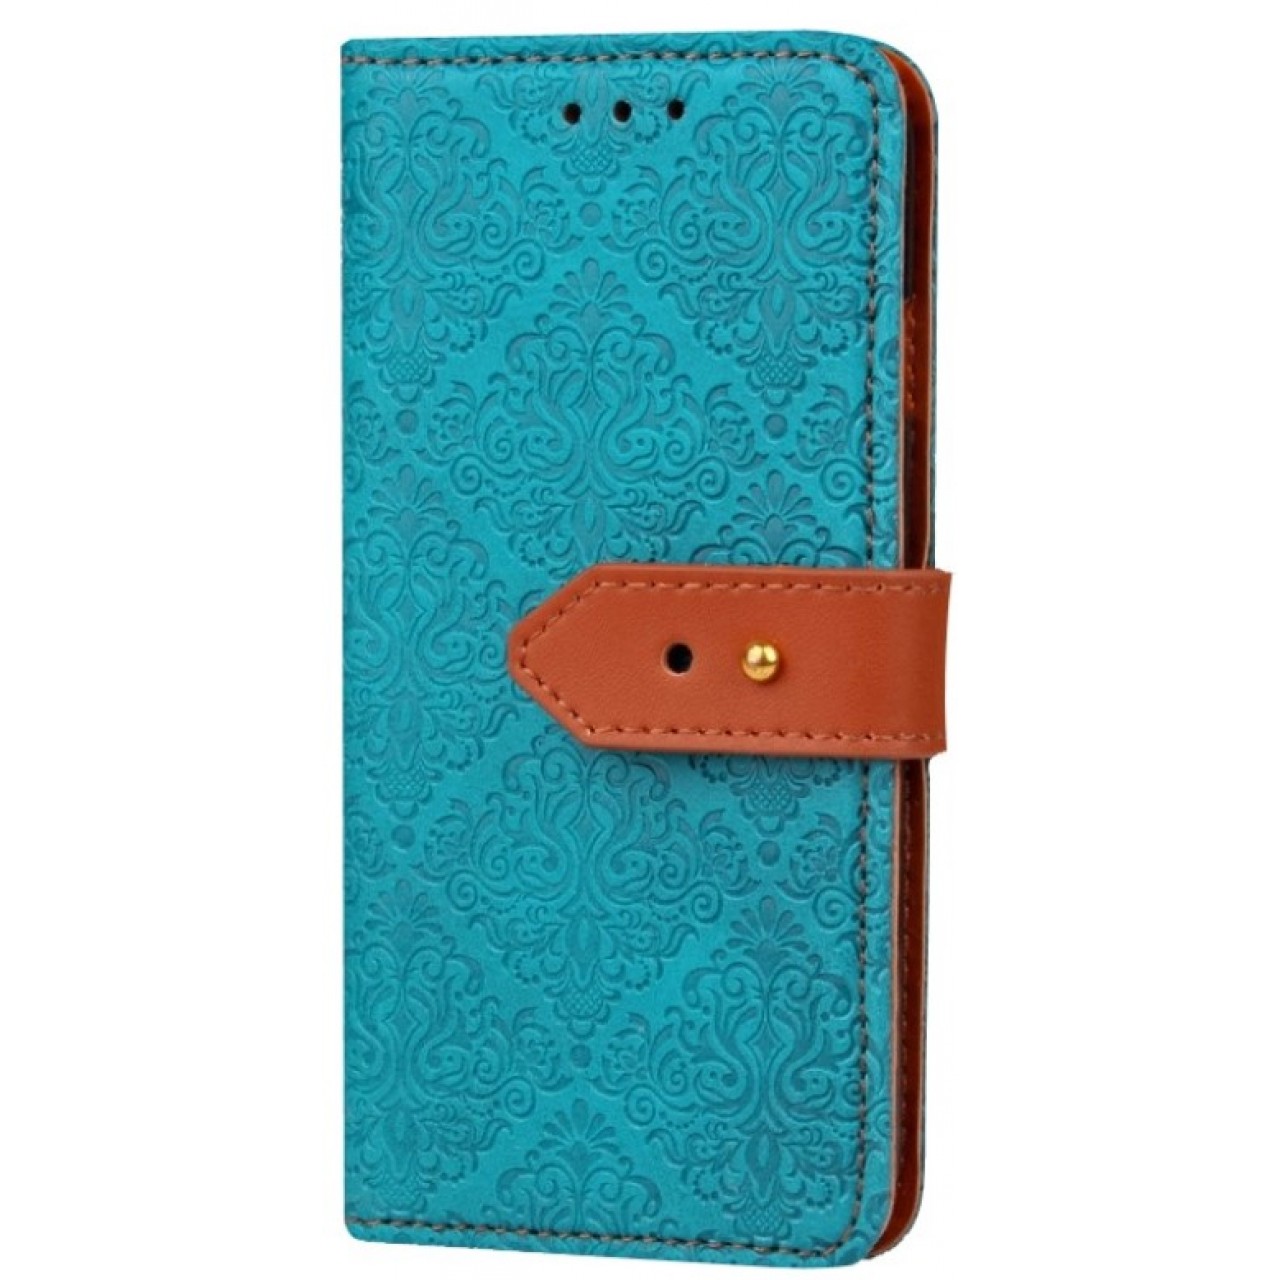 Θήκη Samsung Galaxy S8 Plus PU Leather Πορτοφόλι flip Tribal - 2699 - Γαλάζιο - OEM